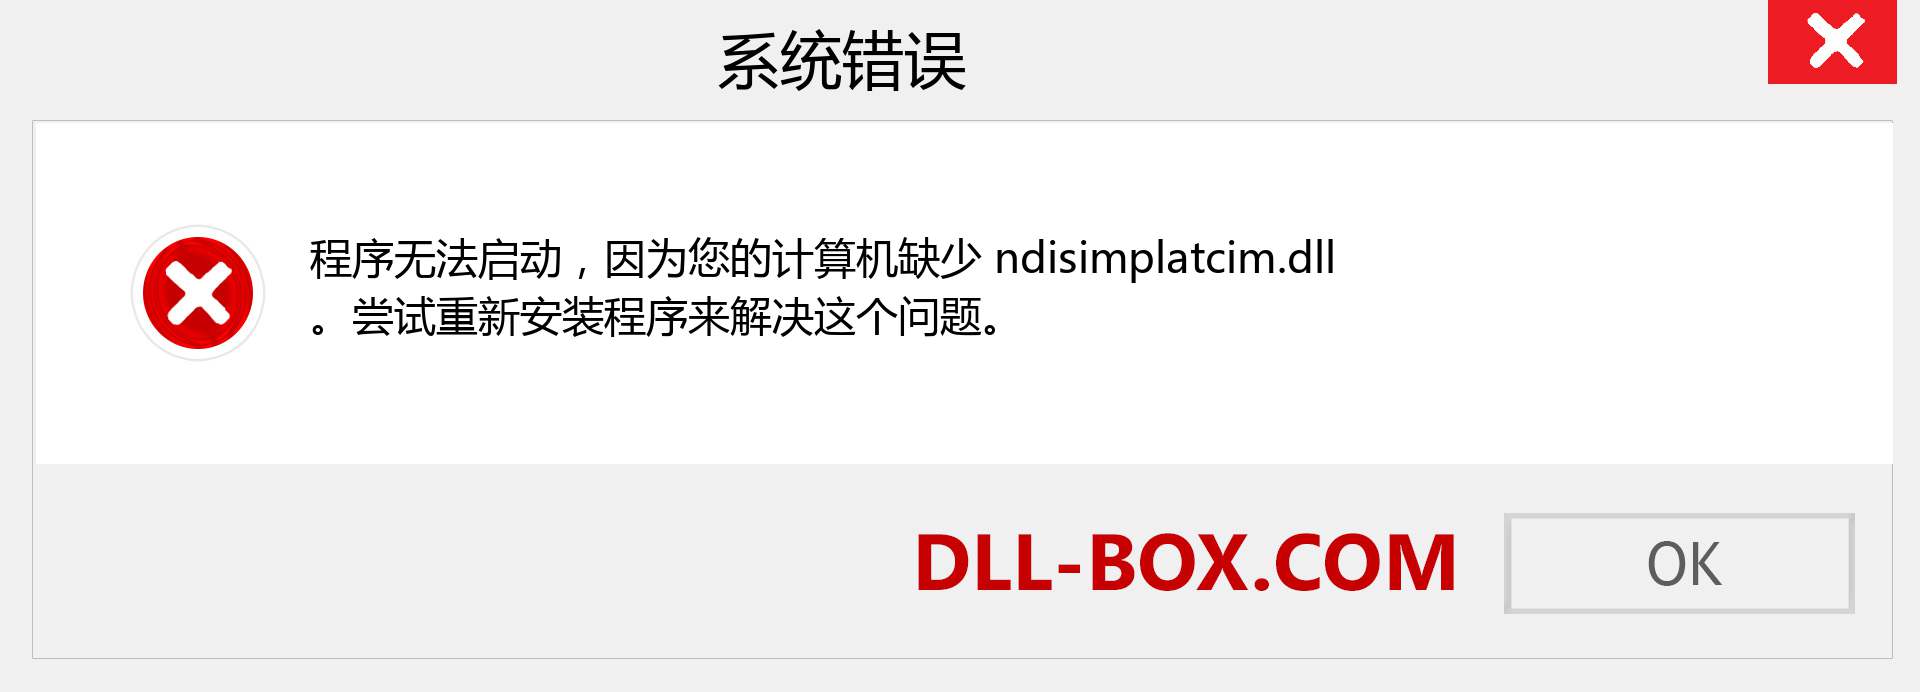 ndisimplatcim.dll 文件丢失？。 适用于 Windows 7、8、10 的下载 - 修复 Windows、照片、图像上的 ndisimplatcim dll 丢失错误